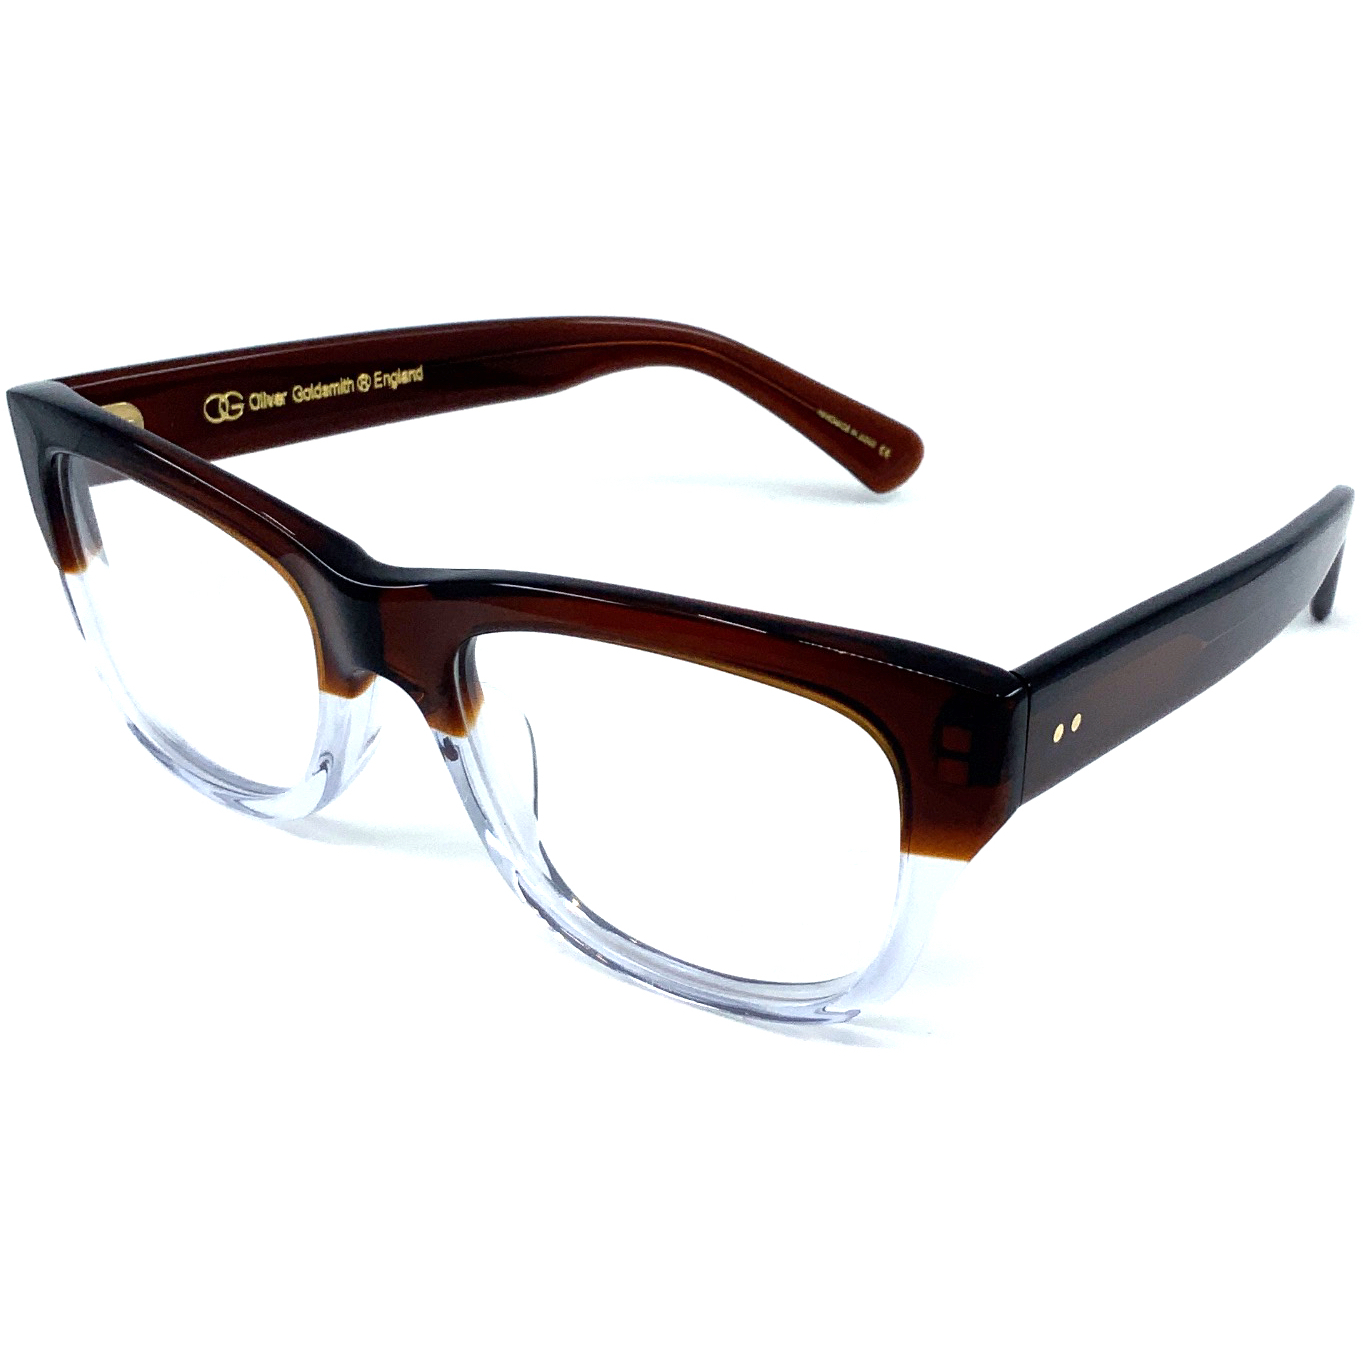 OLIVER GOLDSMITH eyewear アイウェア 眼鏡 サングラス - 小物